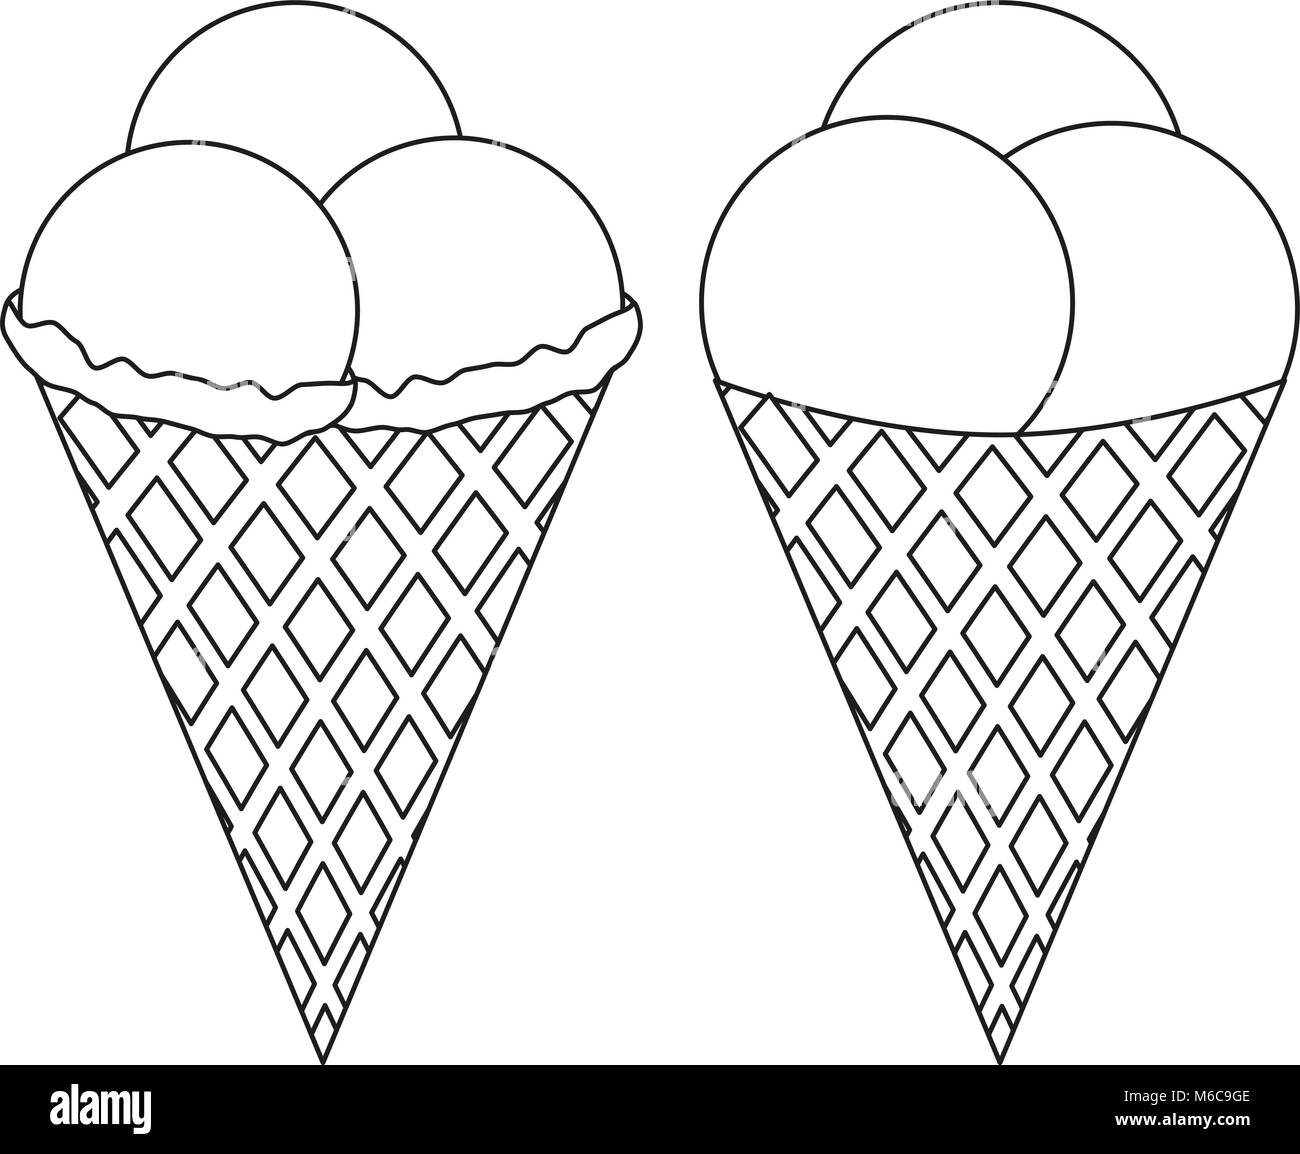 Noir et blanc icon ice cream cone 3 jeu de balle. Illustration de Vecteur